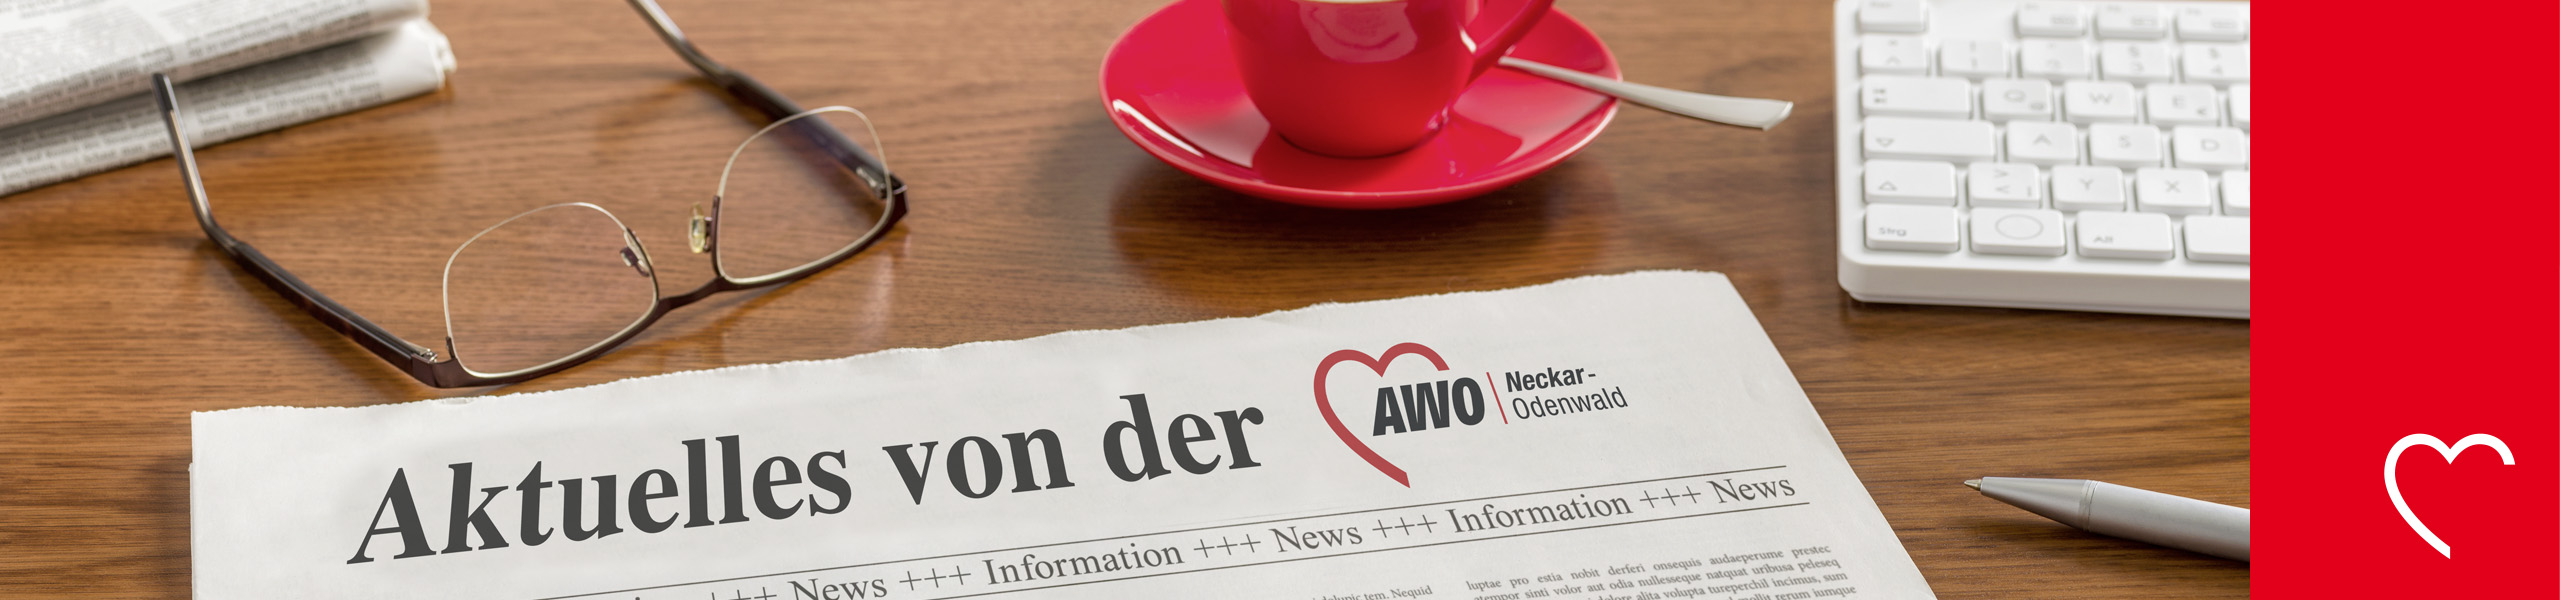 AWO Neckar-Odenwald gGmbH - 25 Jahre AWO Wohn- und Pflegezentrums Osterburken